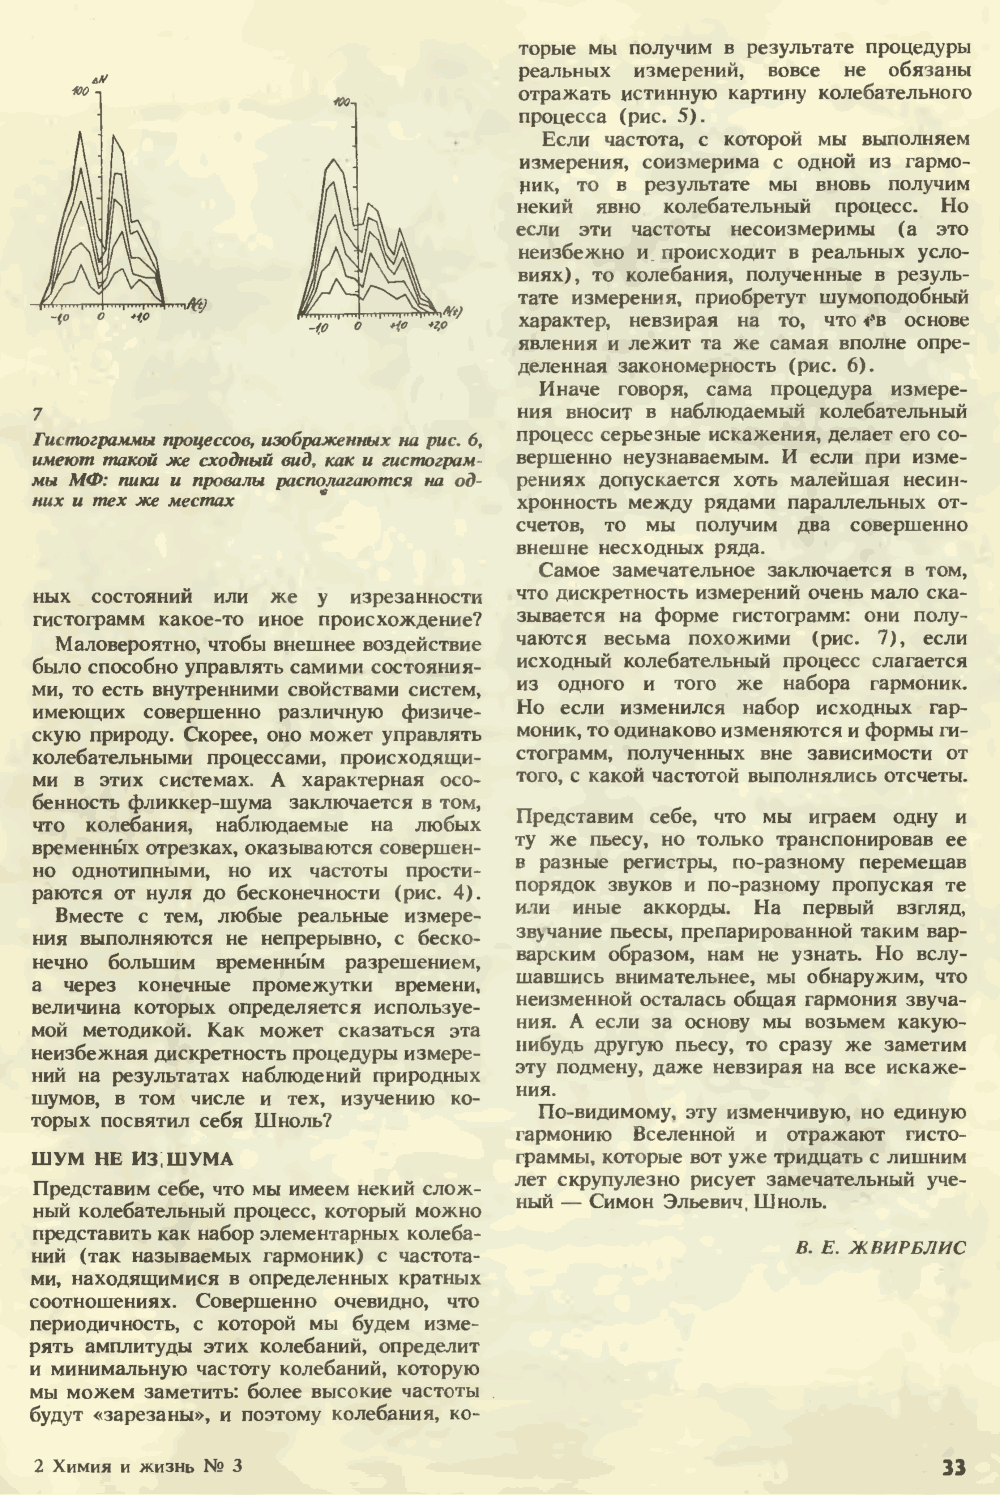 Изменчивая музыка Вселенной. В.Е. Жвирблис. Химия и жизнь, 1991, №3, с.30-34. Фотокопия №4